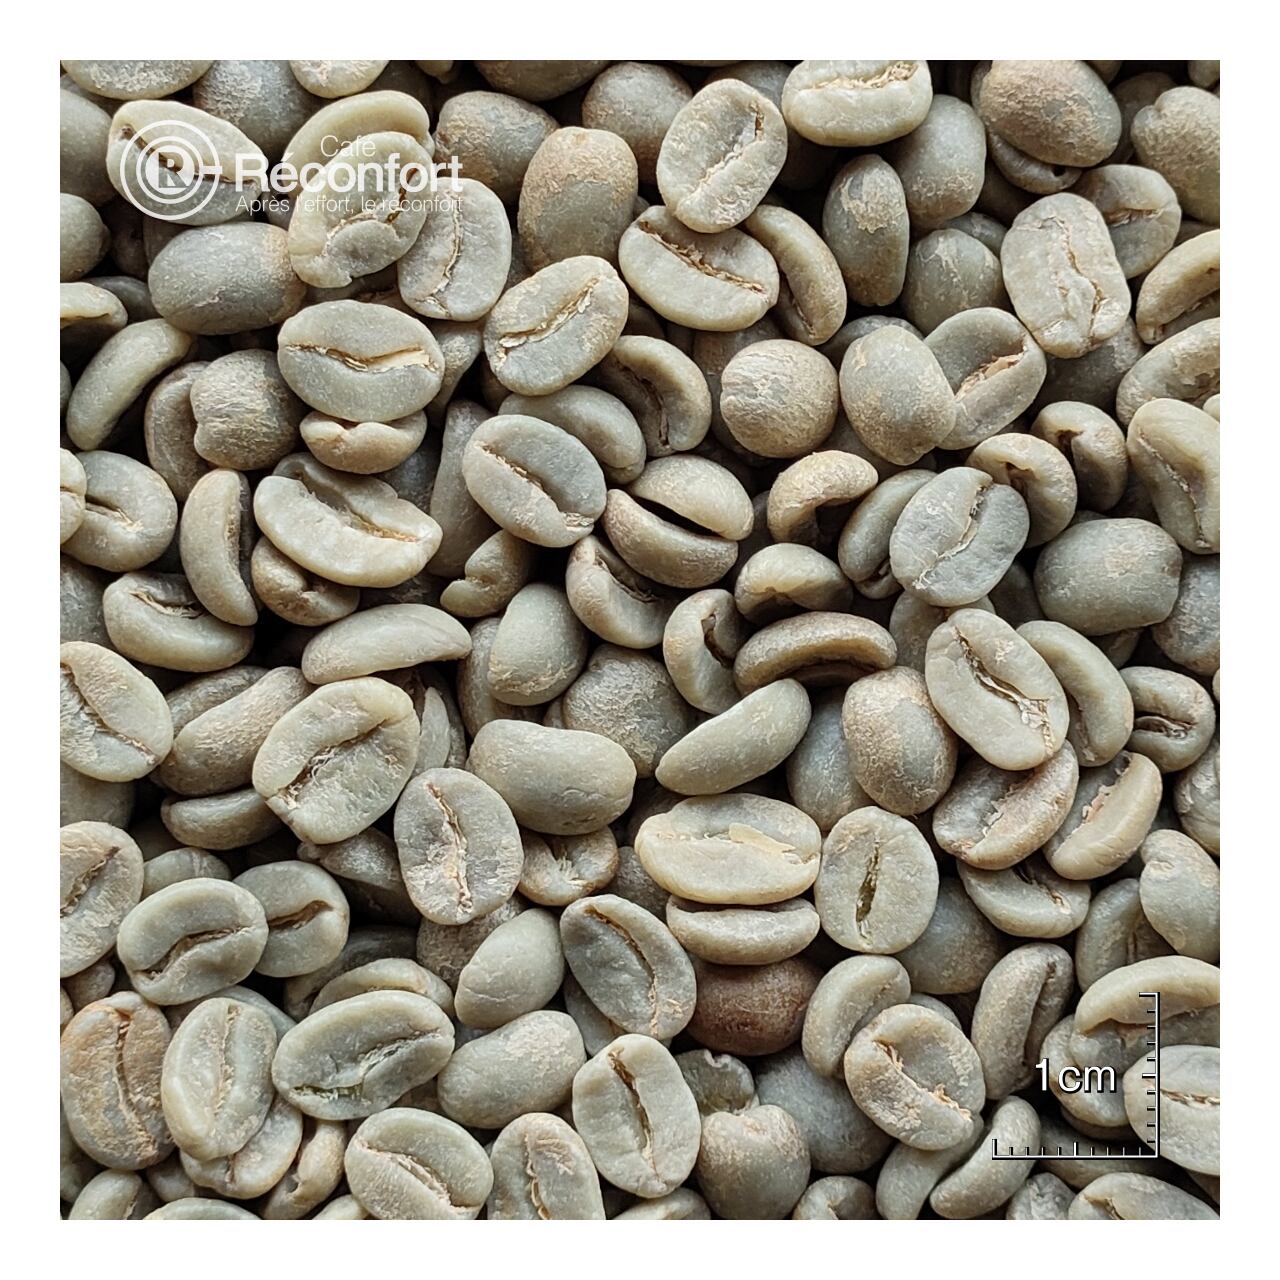 【100g(生豆時)】コロンビア エメラルドマウンテン カフェ レコンフォール オンライン ストア 当日焙煎のコーヒー豆 通販